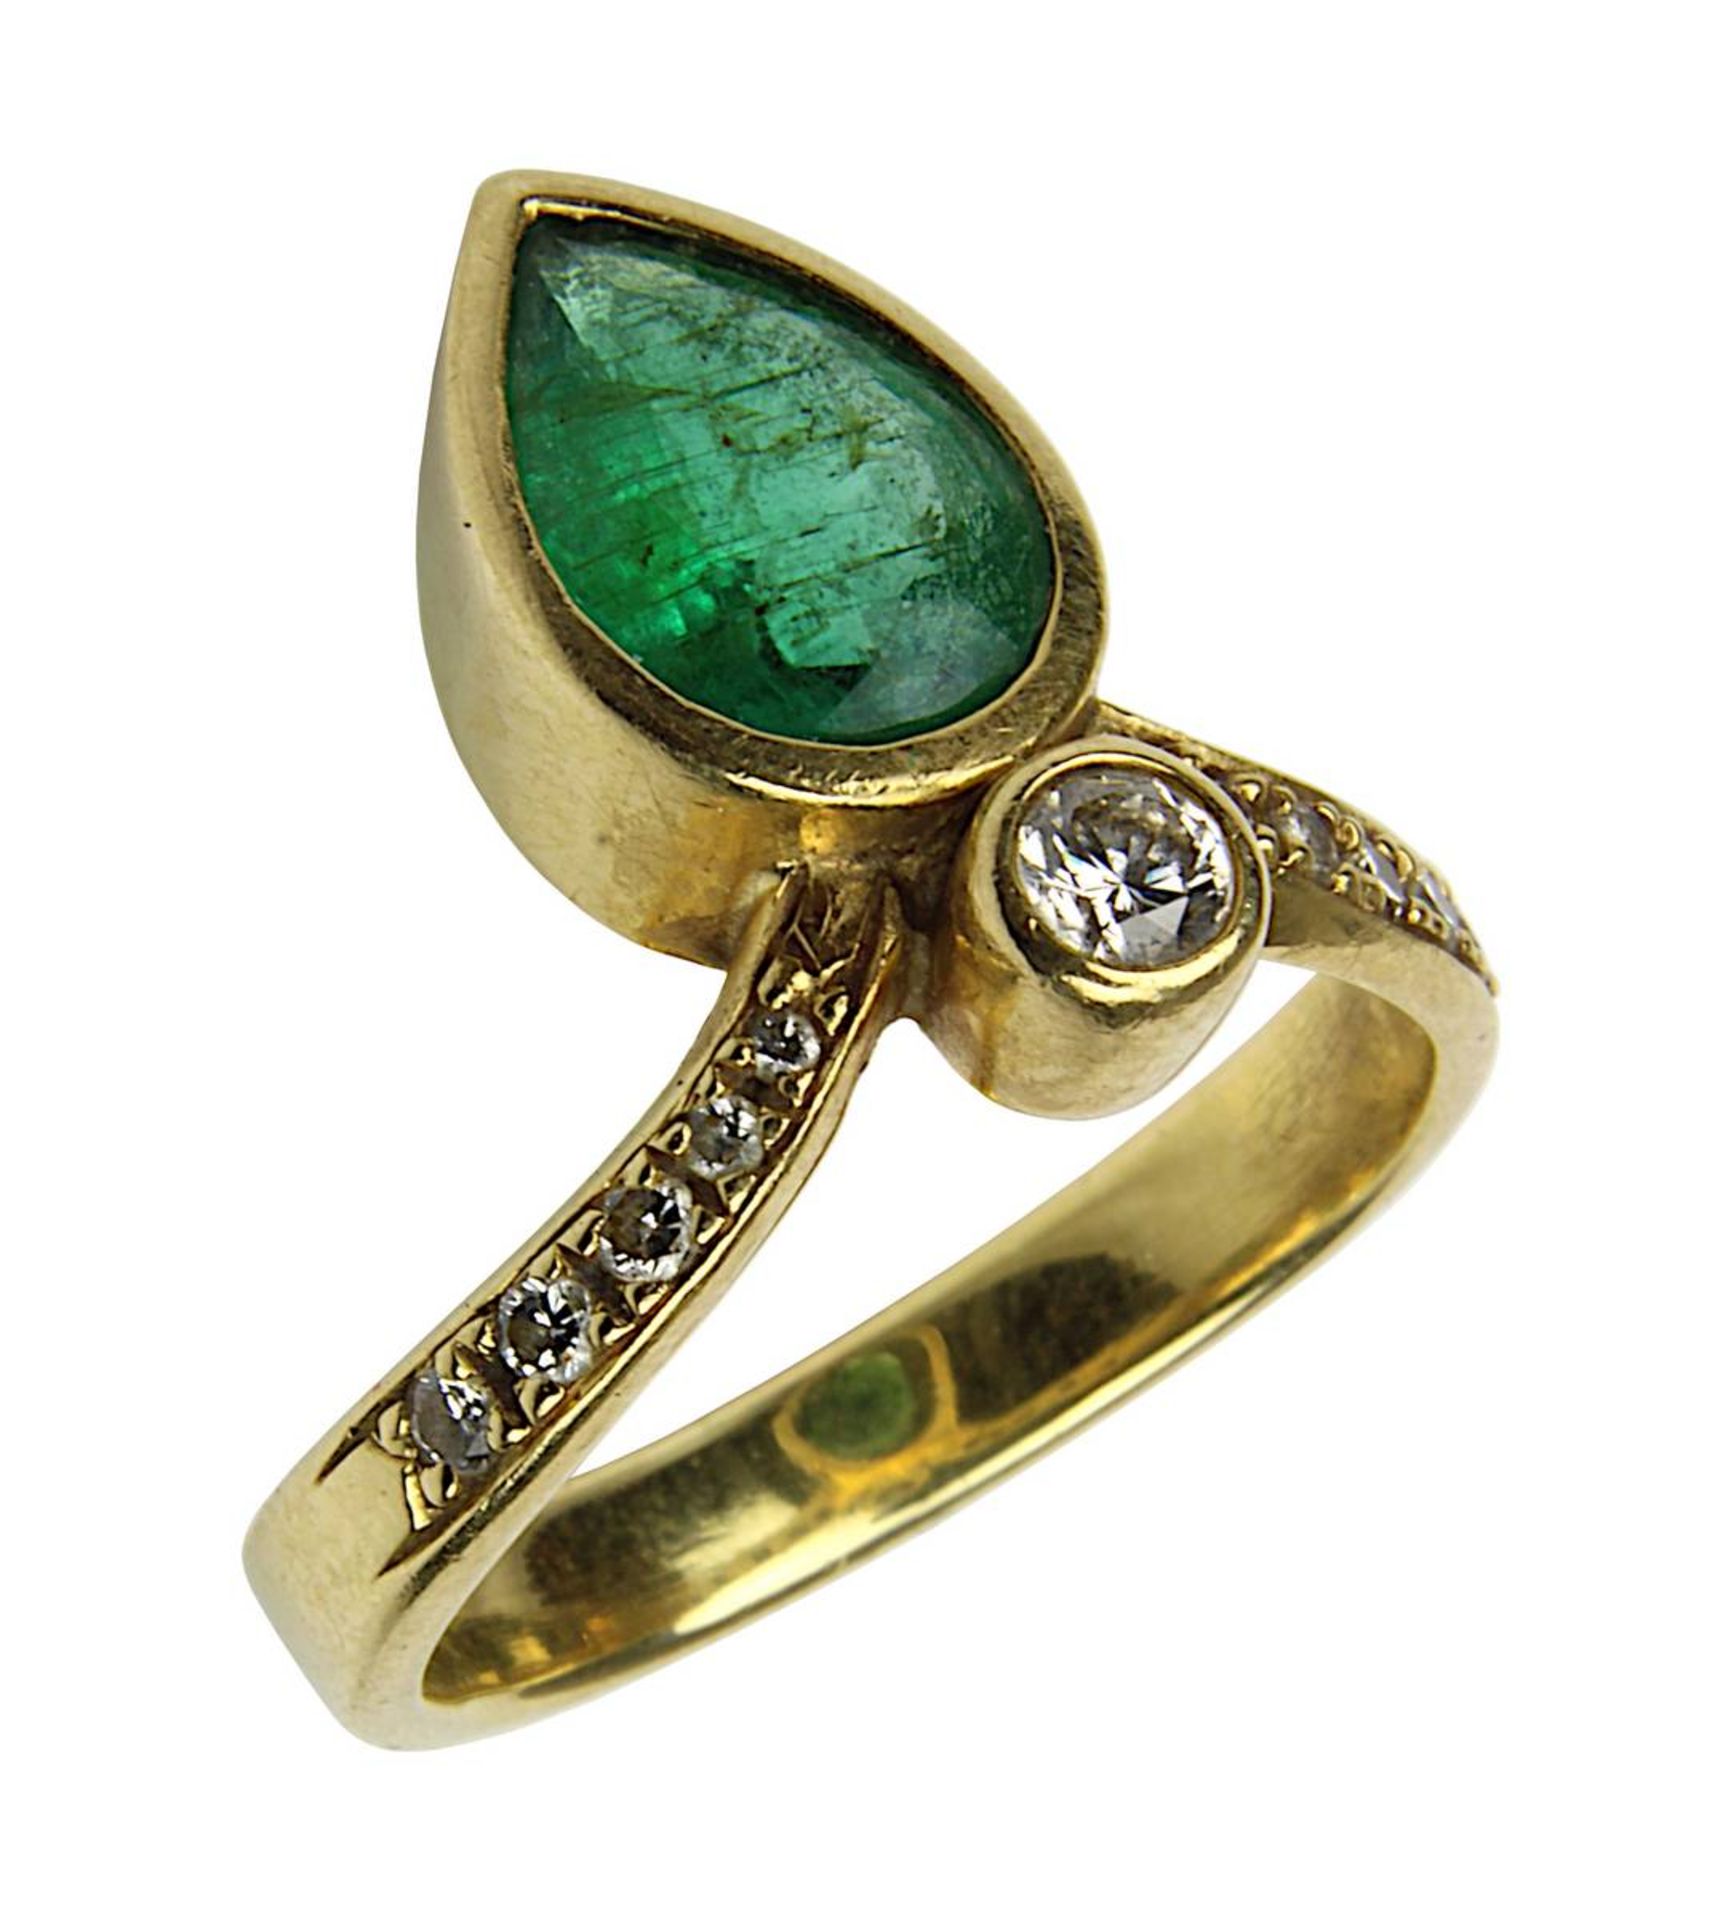 Gelbgold-Ring mit Smaragd und Brillanten, deutsch um 1990, handgefertigte Ringschiene gepunzt 750, R